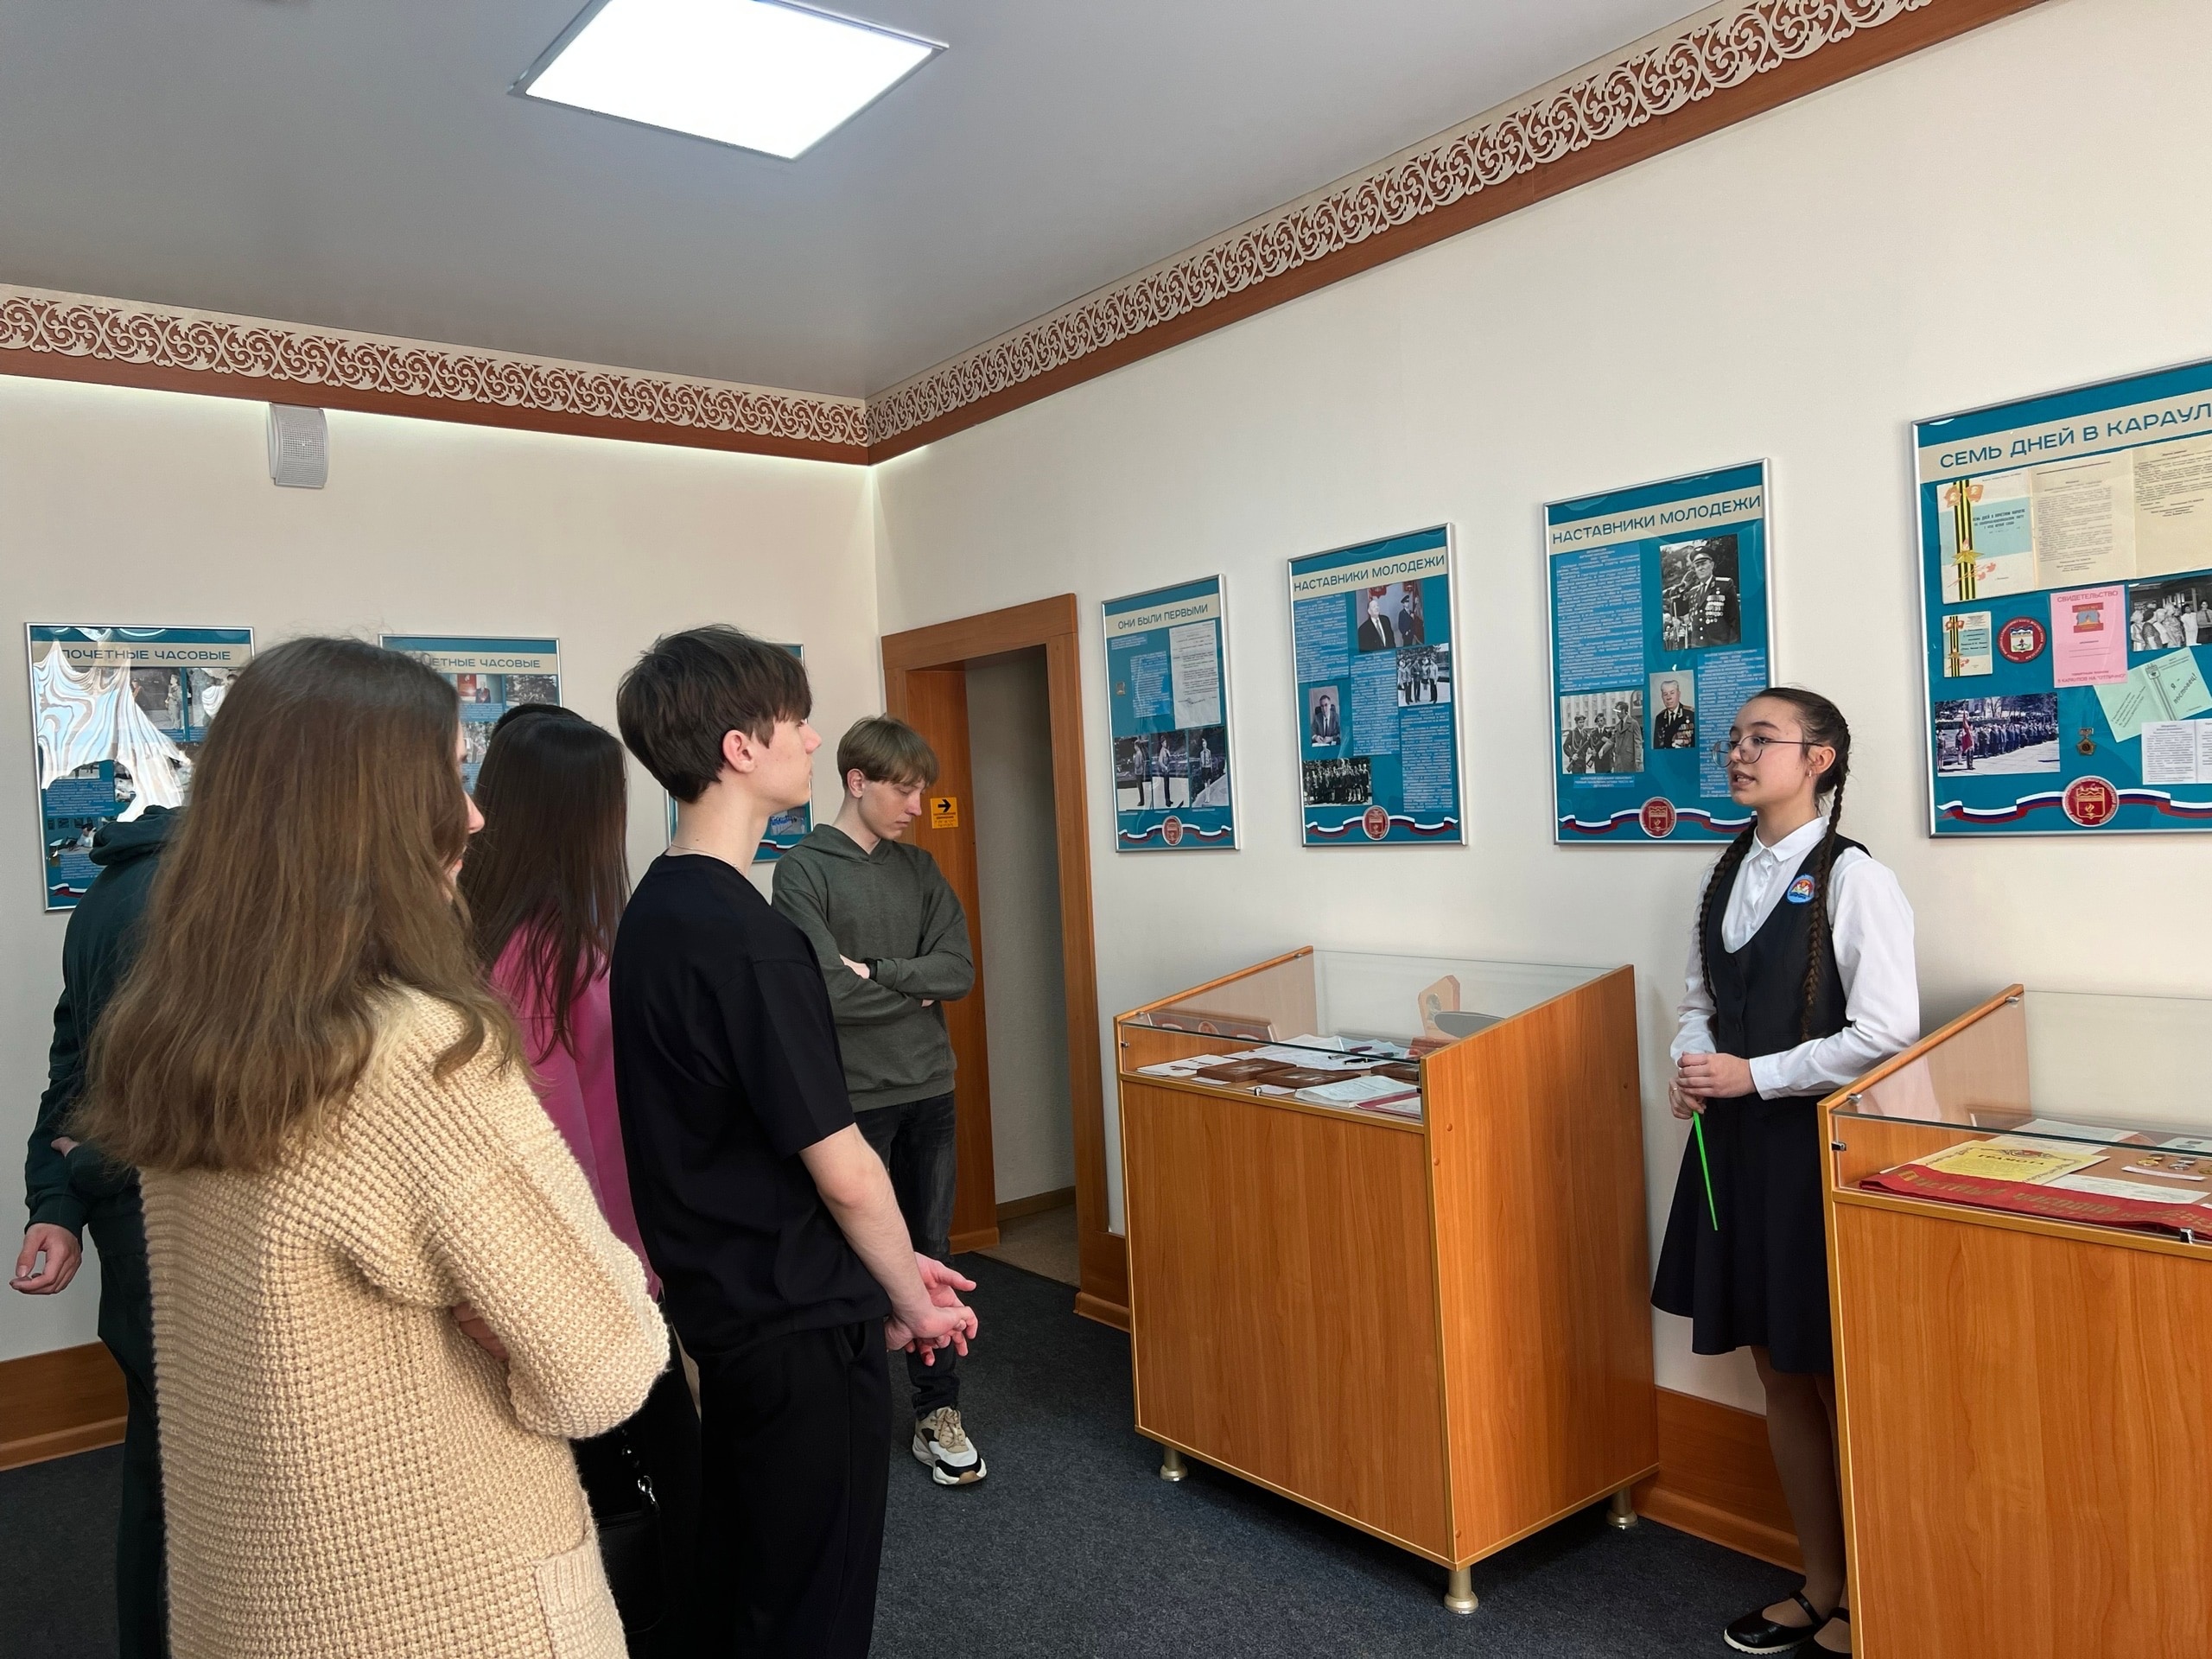 С целью формирования гражданско-патриотического воспитания, в преддверии 9 мая, студенты филиала РГСУ посетили Народный музей боевой славы в г. Пятигорске.